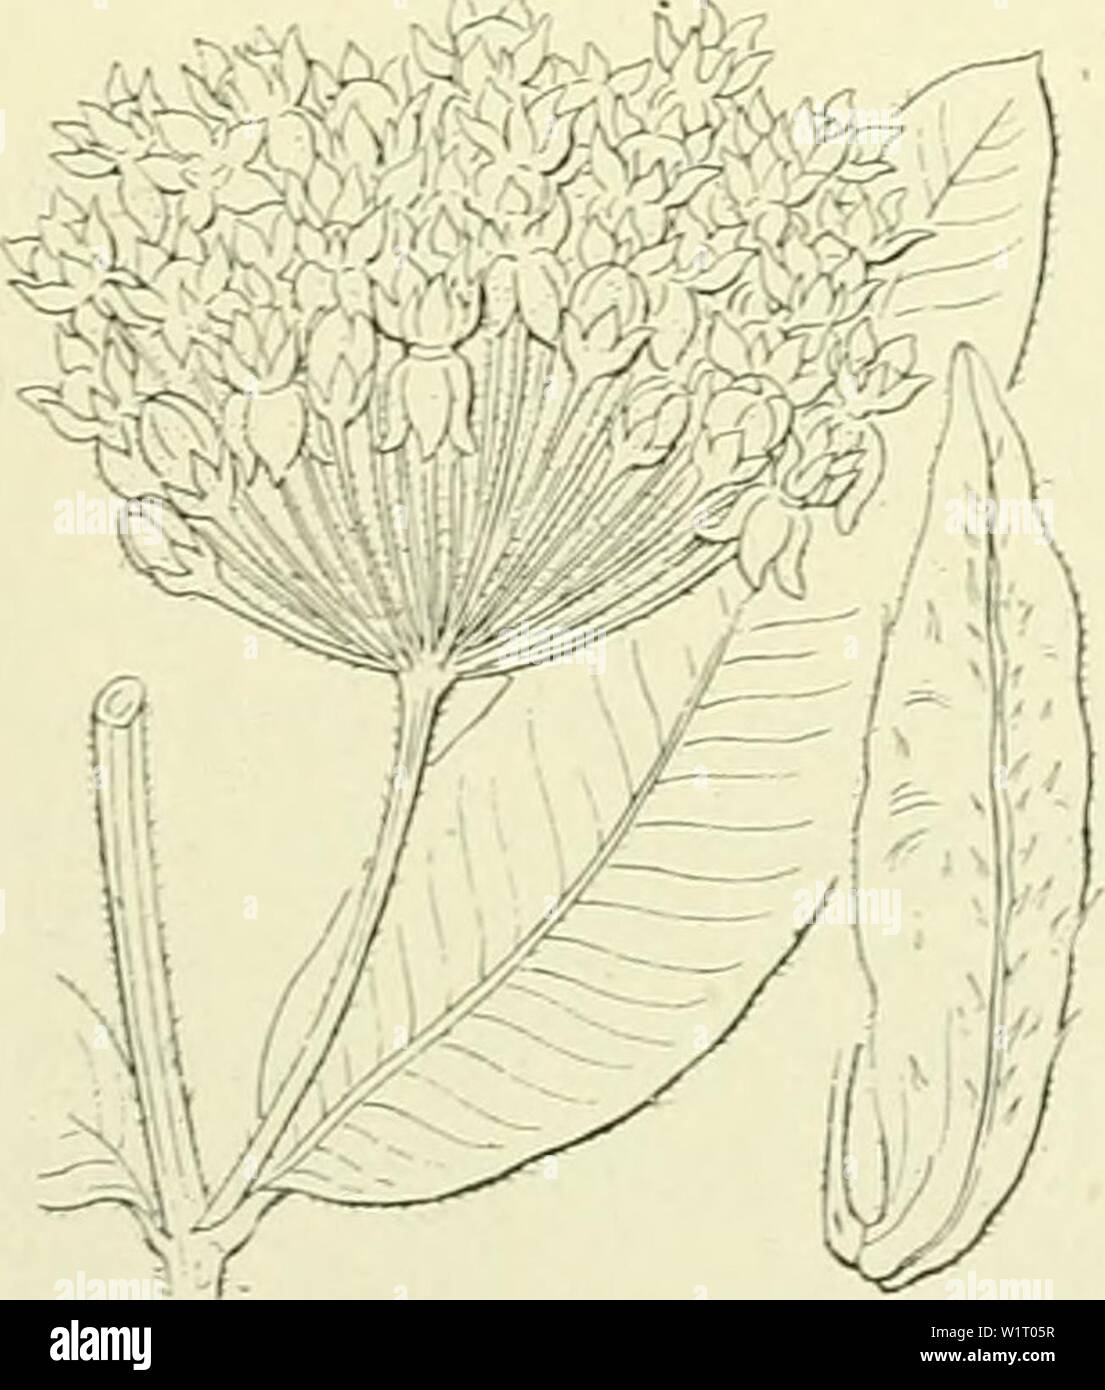 Archive image from page 85 of De flora van Nederland (1909-11). De flora van Nederland  defloravannederl03heuk Year: 1909-11. Vincetoxicum officinale Fig. 76.    9 Asclepias ) L. (A. syriaca 'â ) L). Z ij d e p 1 a n t Asclepias cornuti Fig. 77. A. cornÃ¼ti â '') Dcsne. (fig. 77). Deze plant heeft een ver voortkruipenden wortelstok en een rechtopstaanden stengel, zonder bebladerde takken, die boven, evenals de stelen der bijschermen, grijs kort behaard is. De bladen zijn groot, meest tegenoverstaand, kort gesteeld, elliptisch, stompachtig met een stekelpunt, van onderen grijsviltig, met tal va Stock Photo